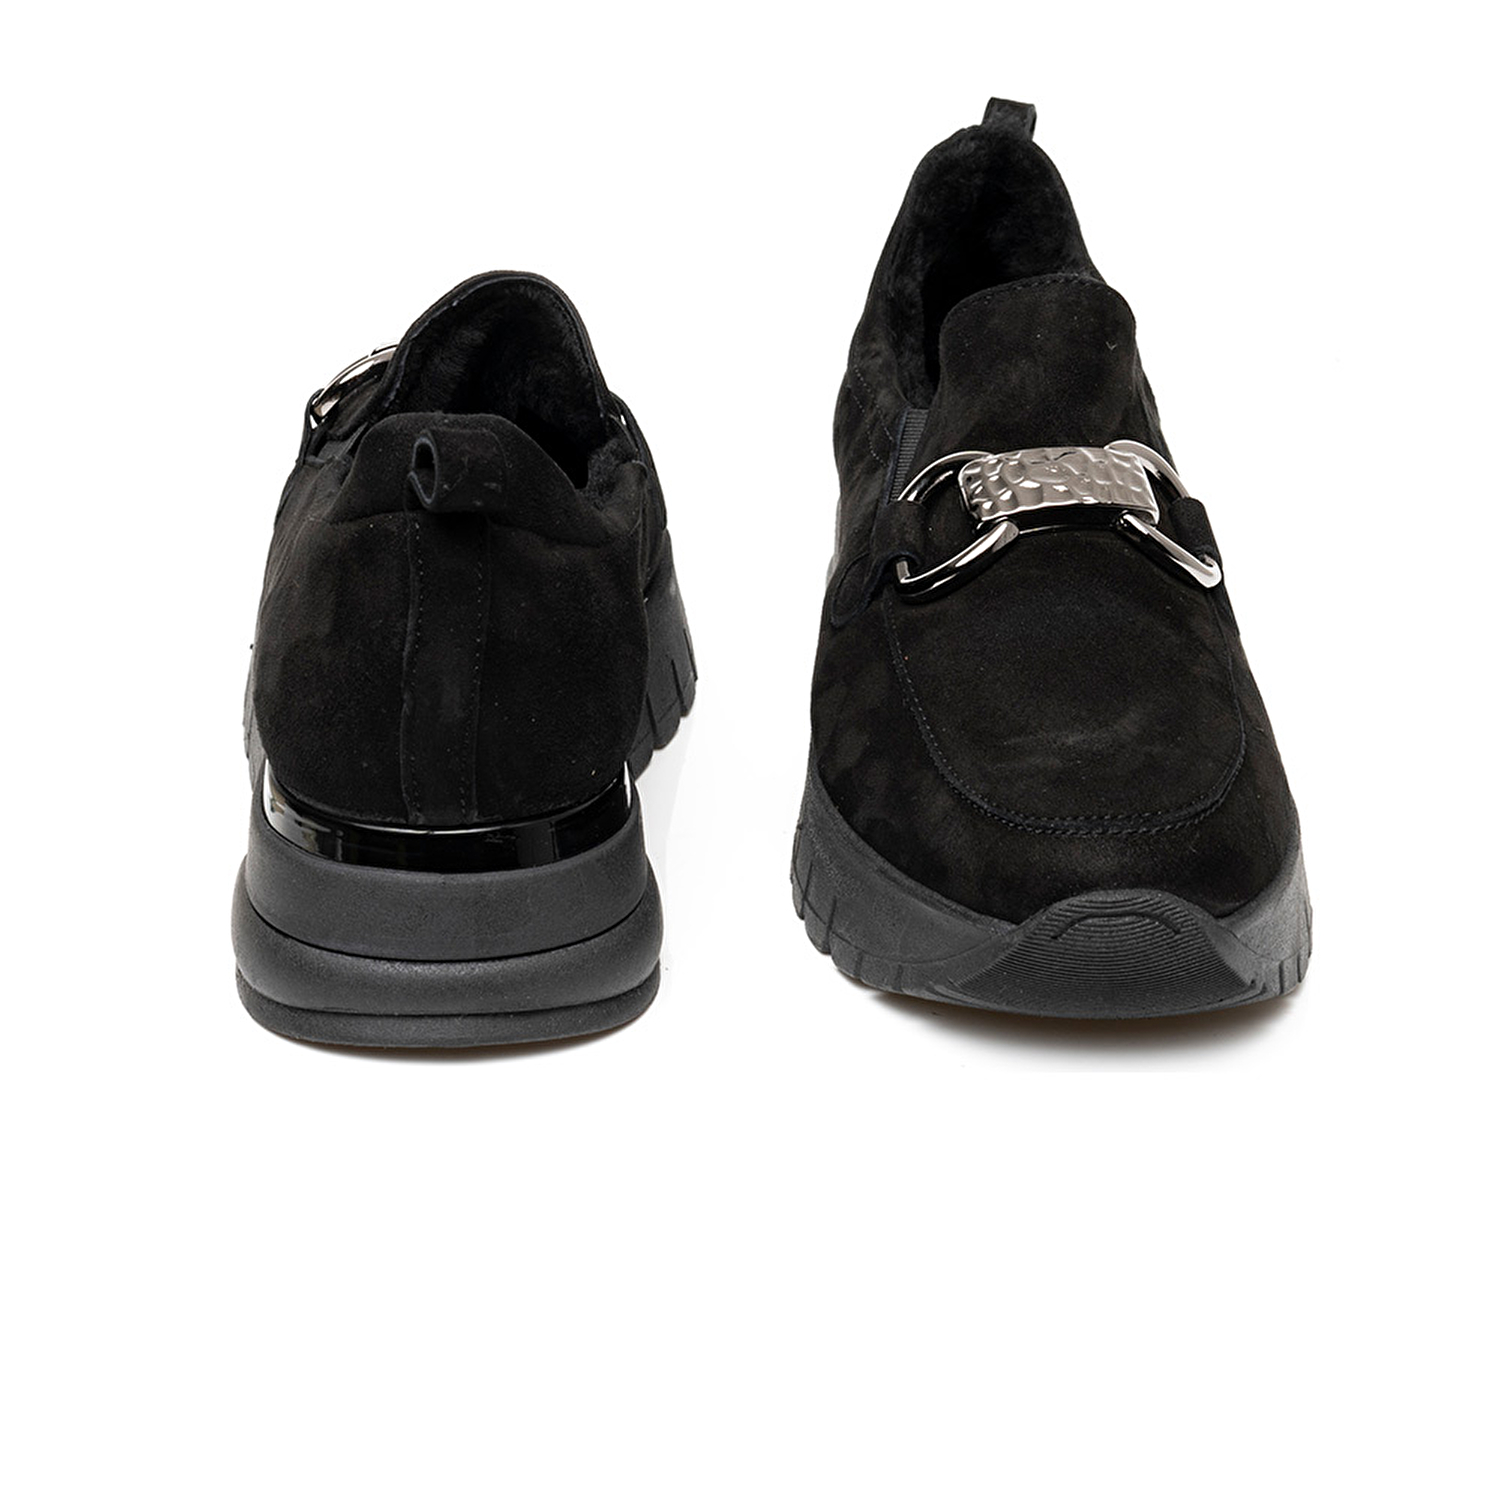 Kadın Siyah Nubuk Hakiki Deri Casual Ayakkabı 3K2QA72185-6